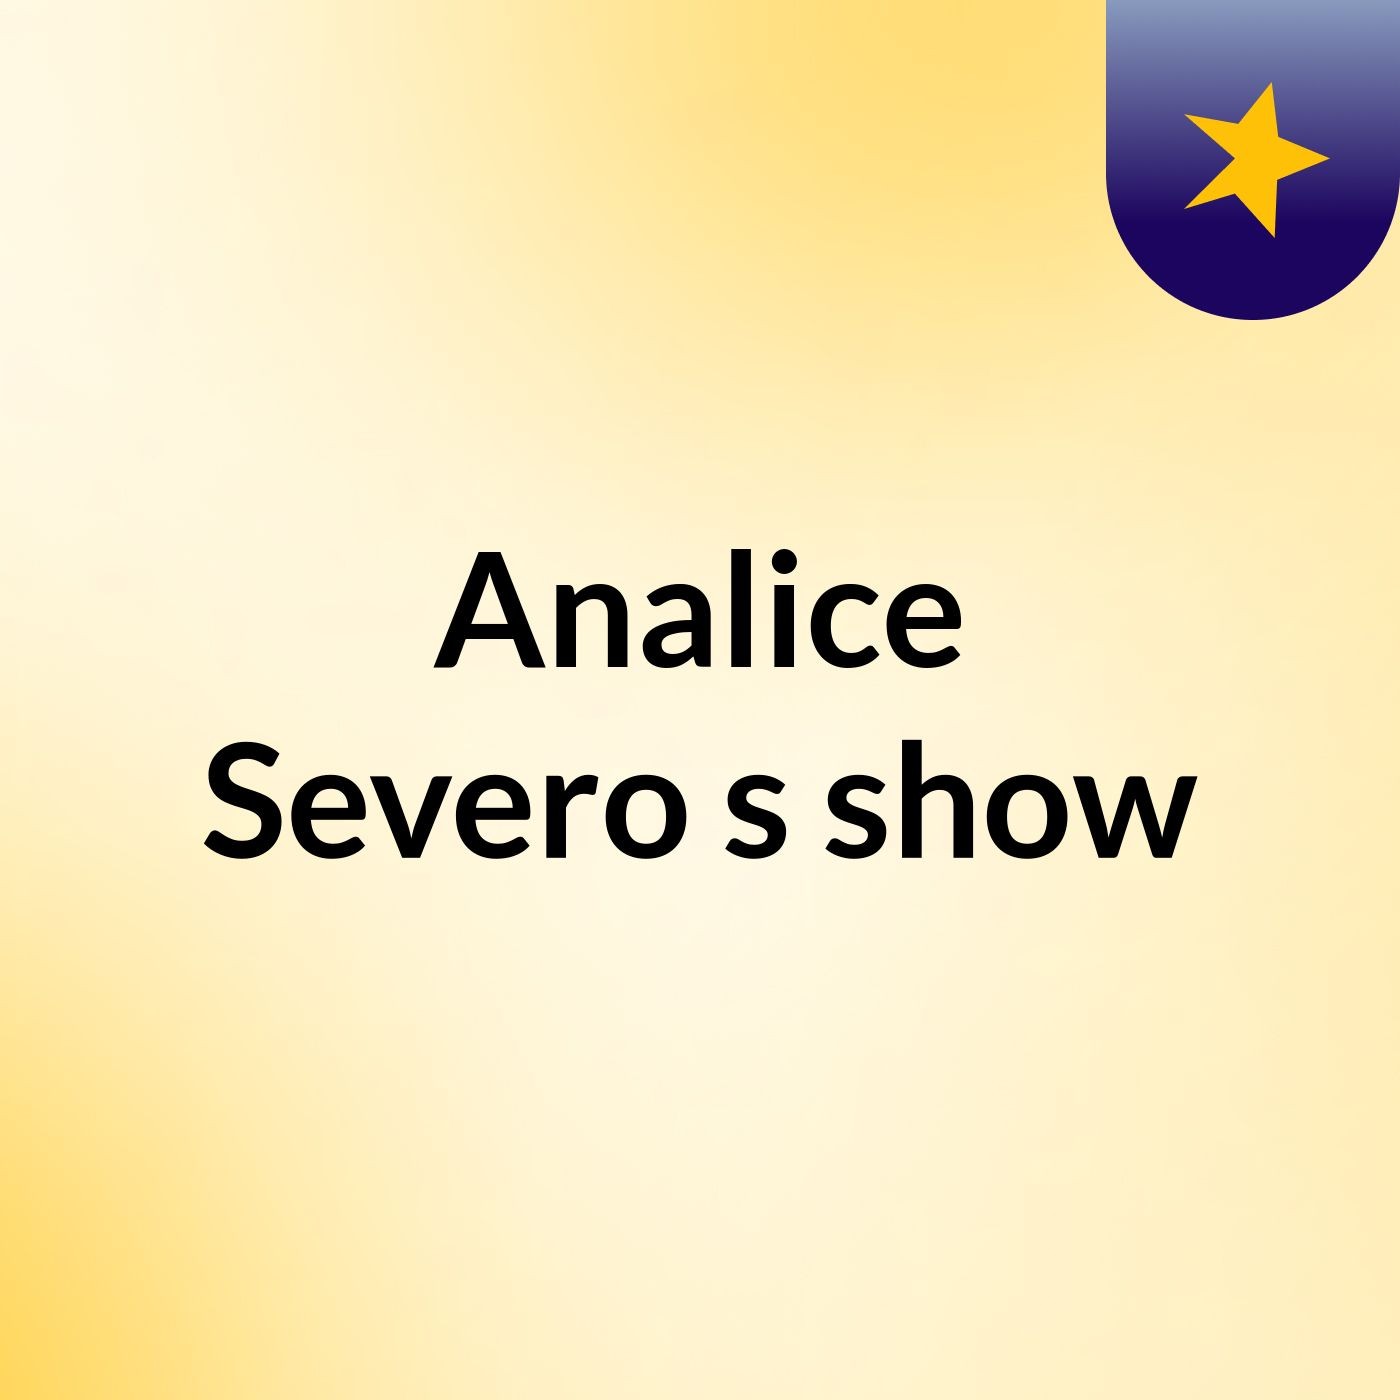 Analice Severo's show